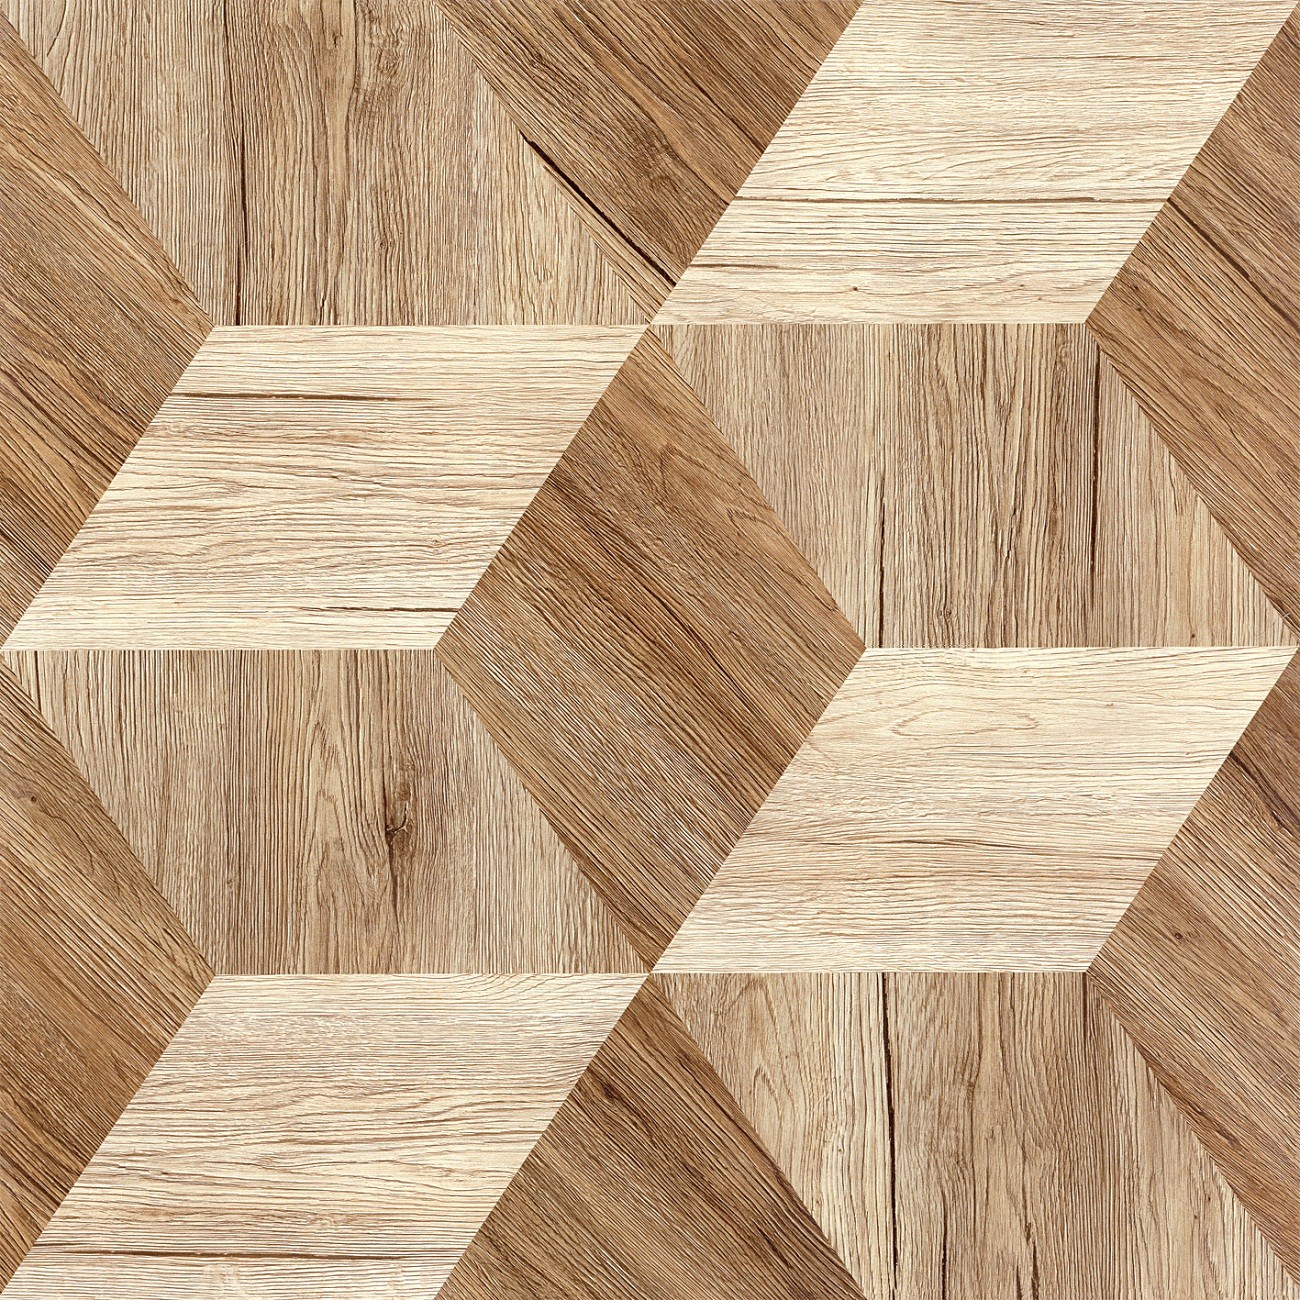 Matt Finished Porcelain Wood Effect Floor Tiles High Gloss Waterproof